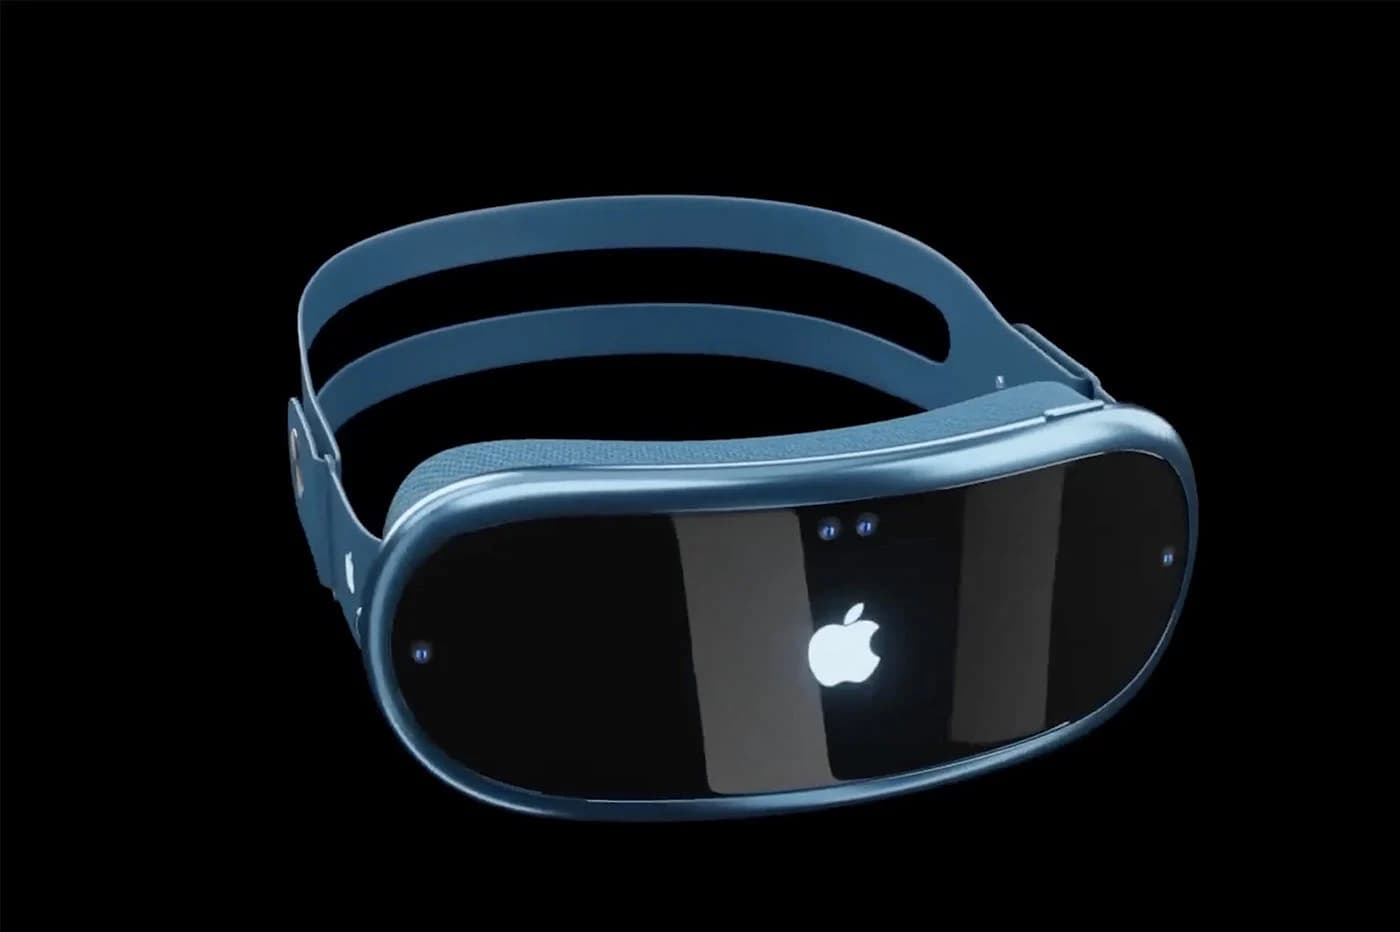 Reality Pro : n’importe qui pourra créer des applications pour le casque Apple grâce à Siri Apple